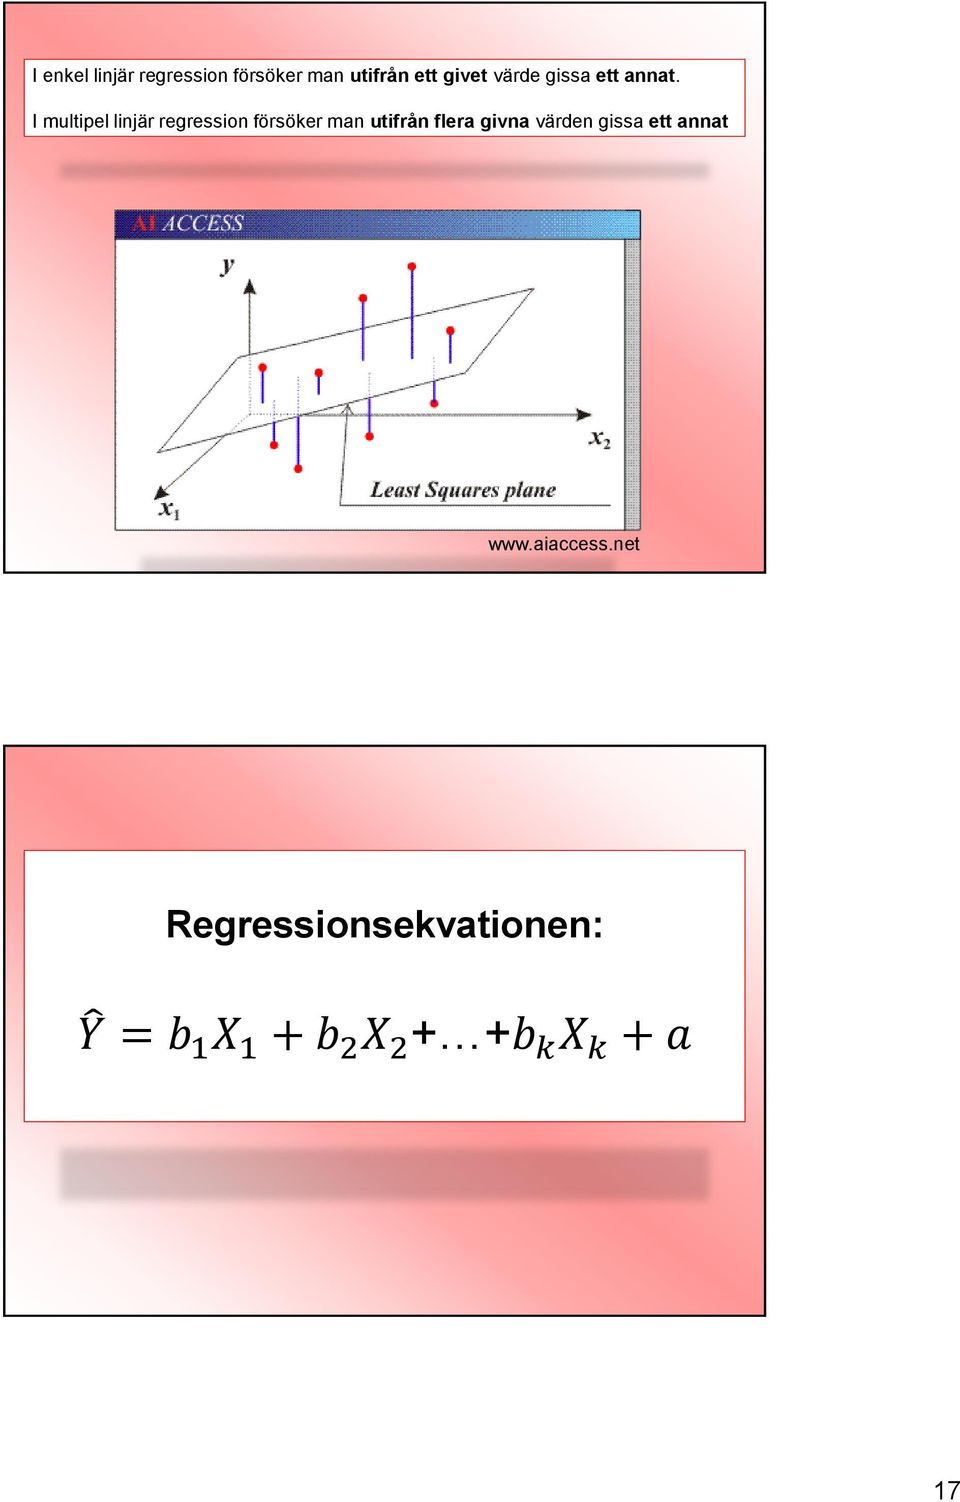 I multipel linjär regression försöker man utifrån flera